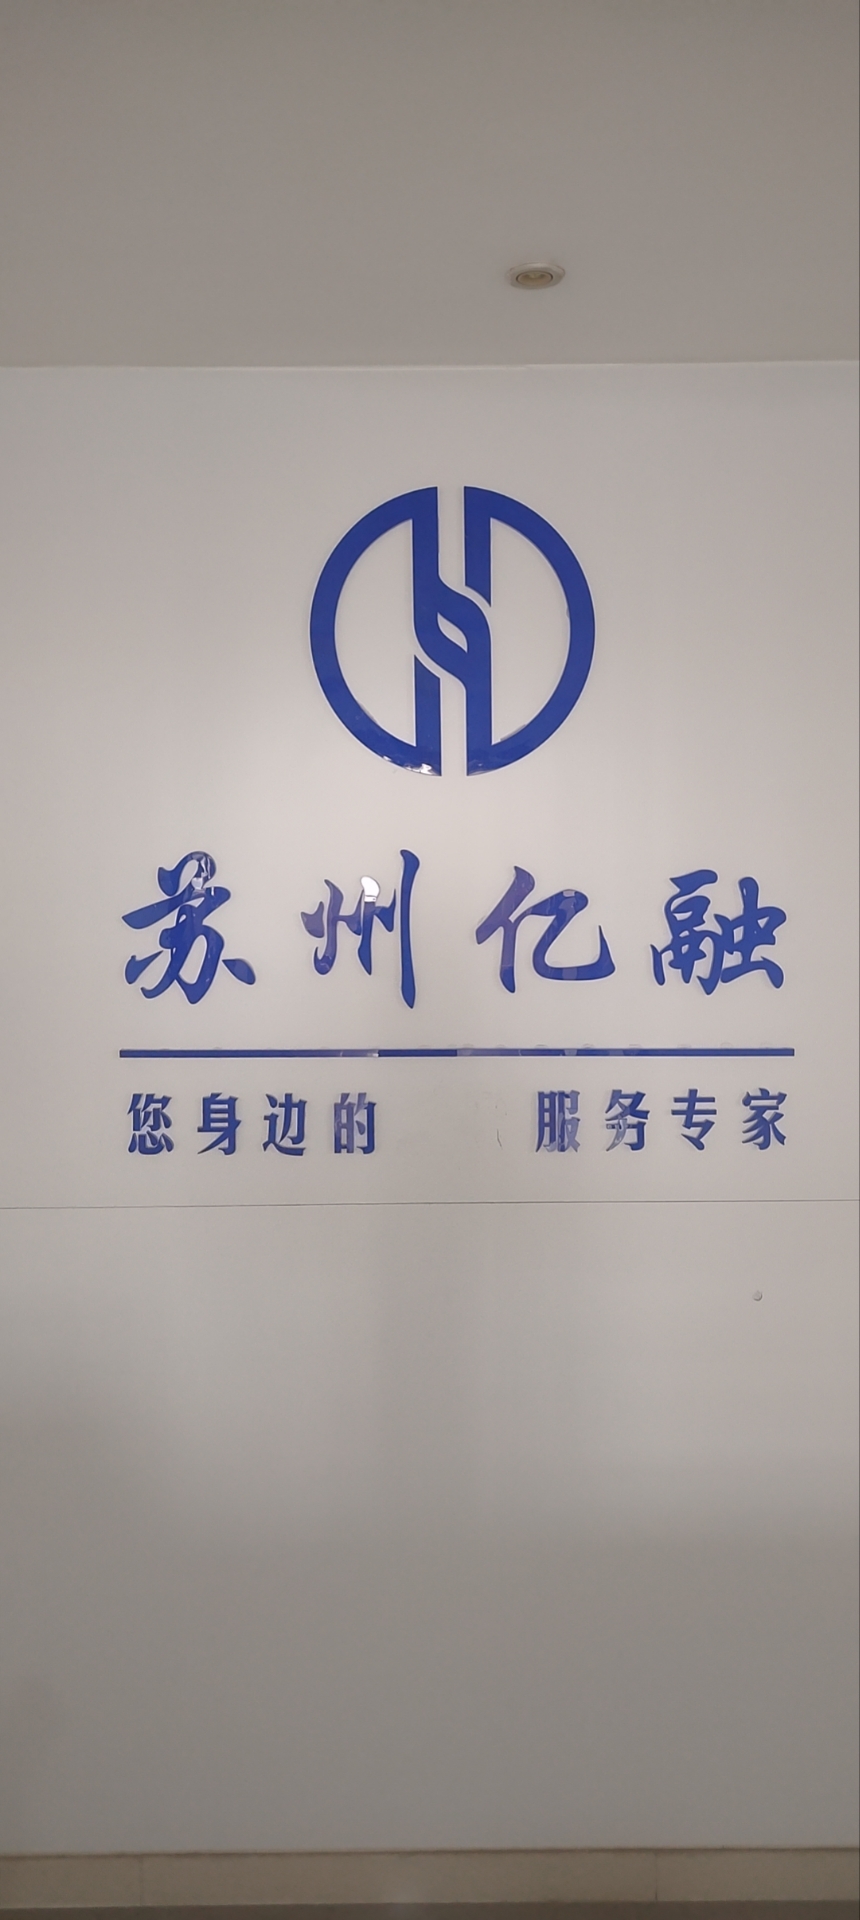 参会企业Logo